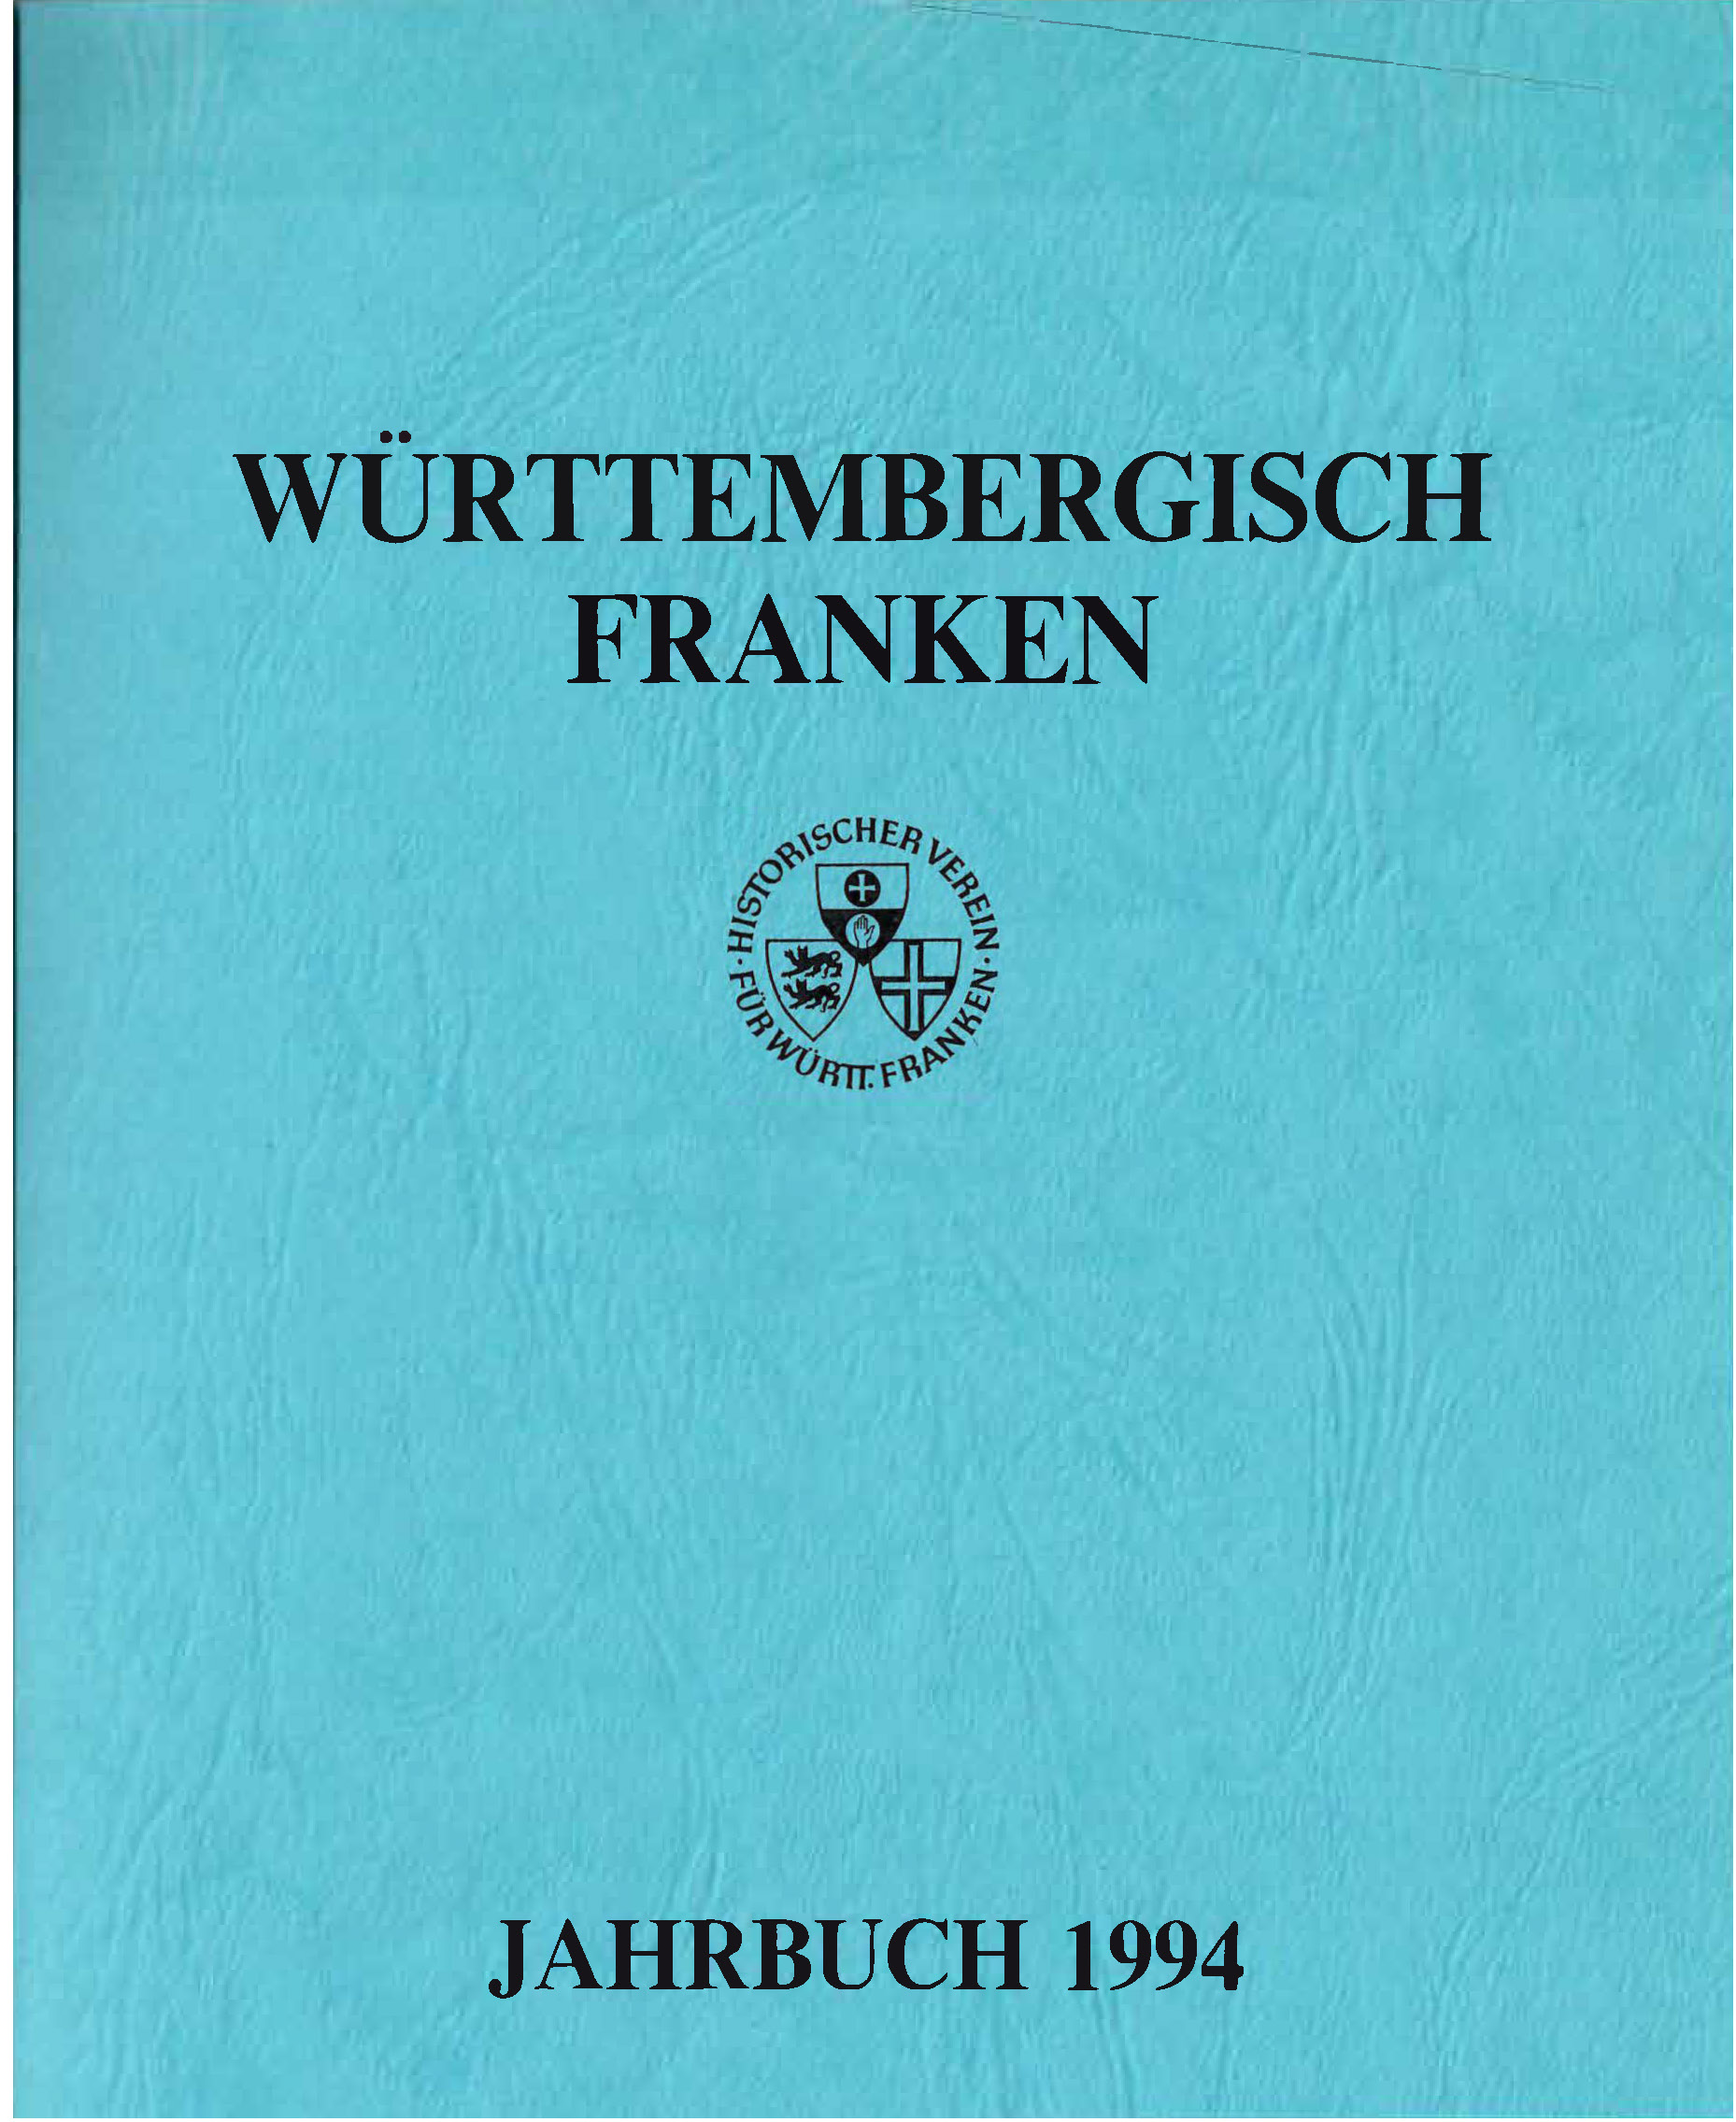                     Ansehen Bd. 78 (1994): Württembergisch Franken
                